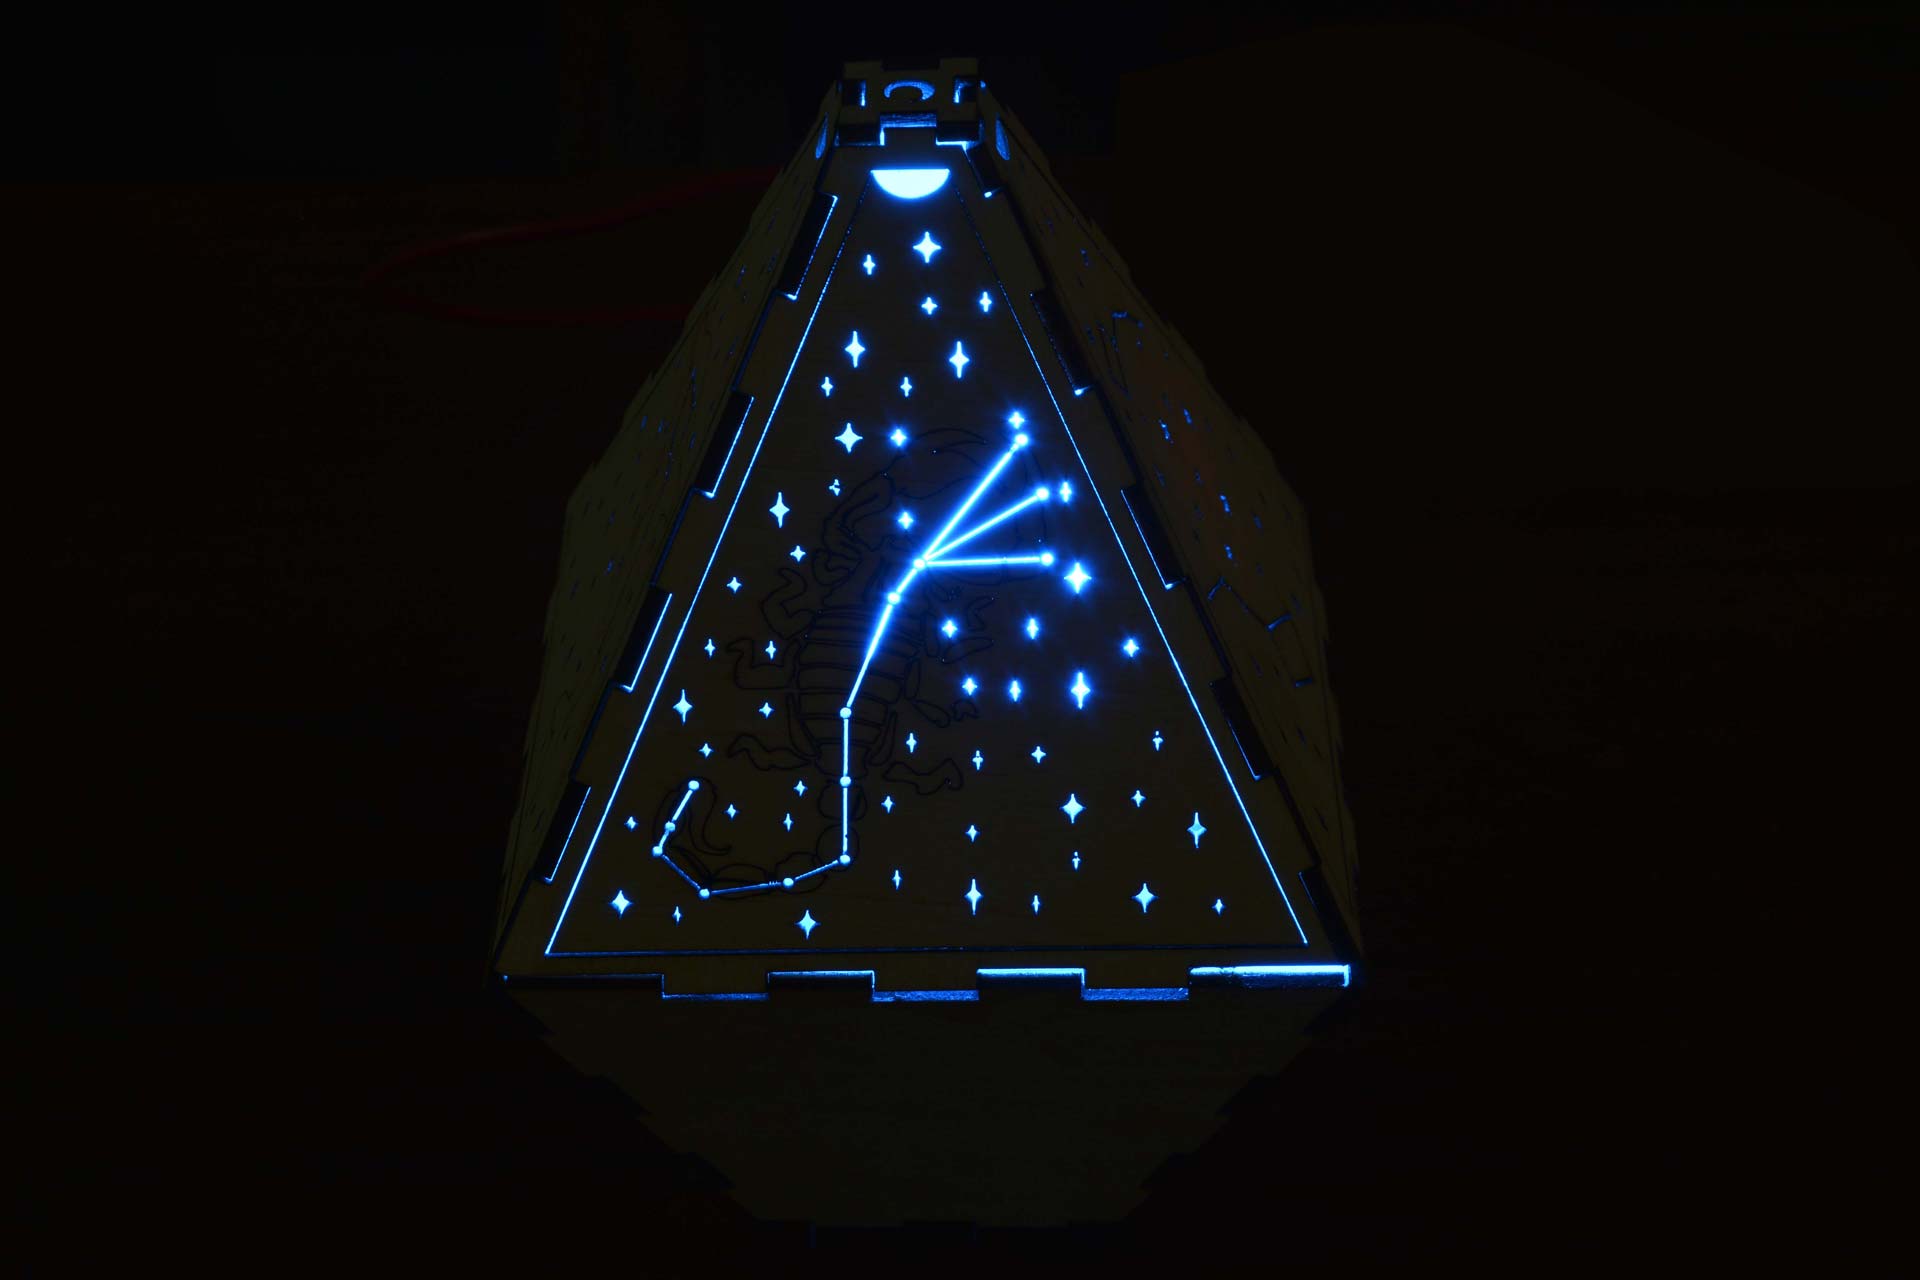 DIY Laser Cut Constellation Lamp — Steemit